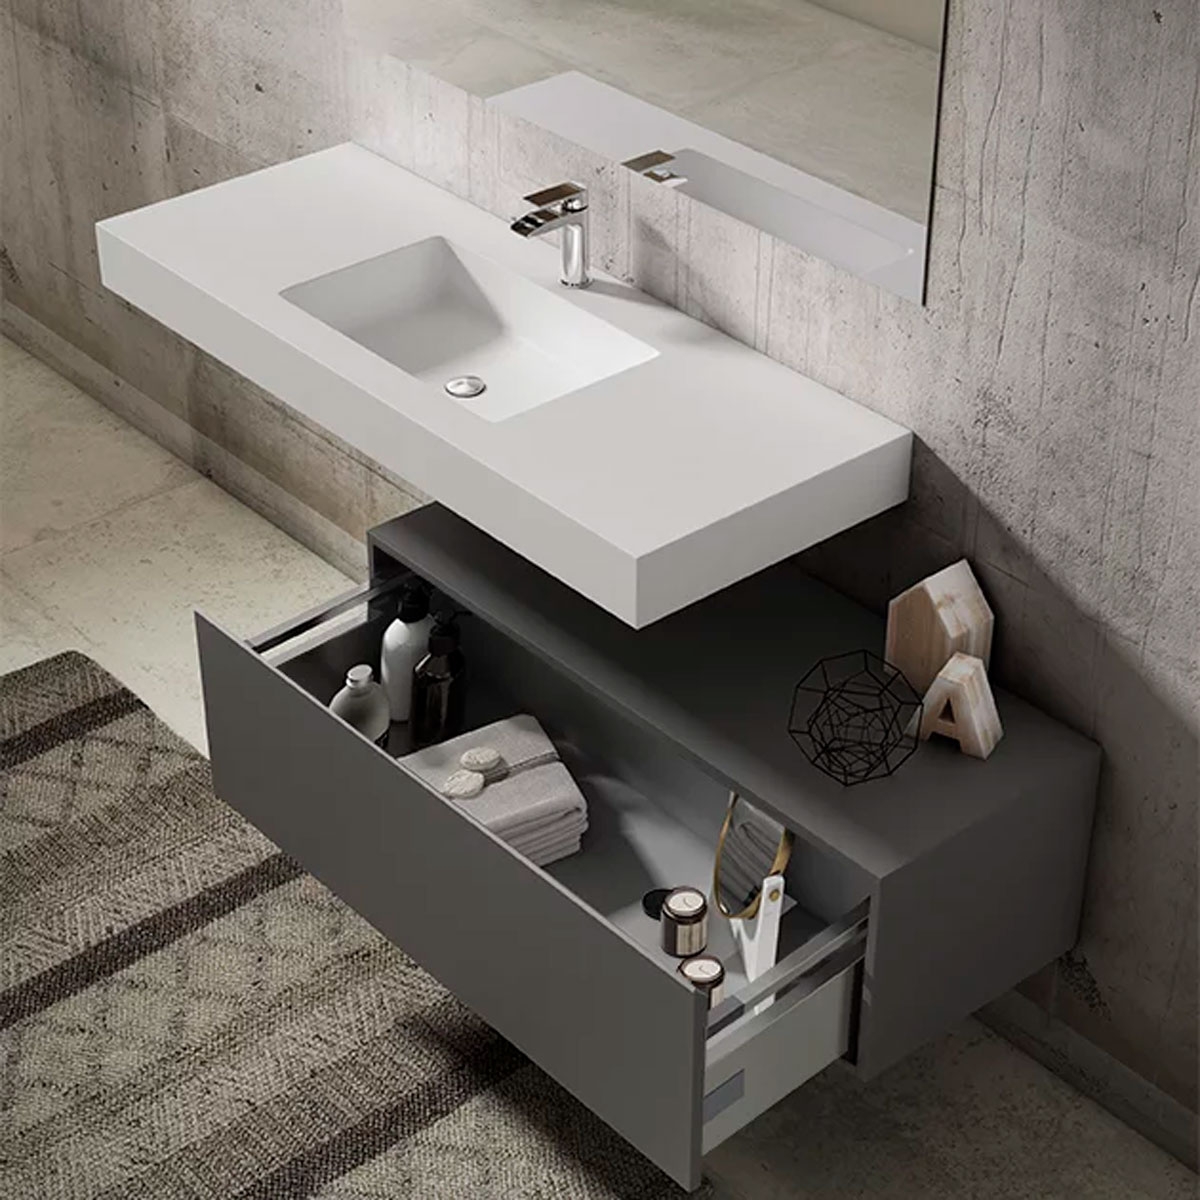 Mueble de baño modelo nomad lavabo integrado 1 cajón5